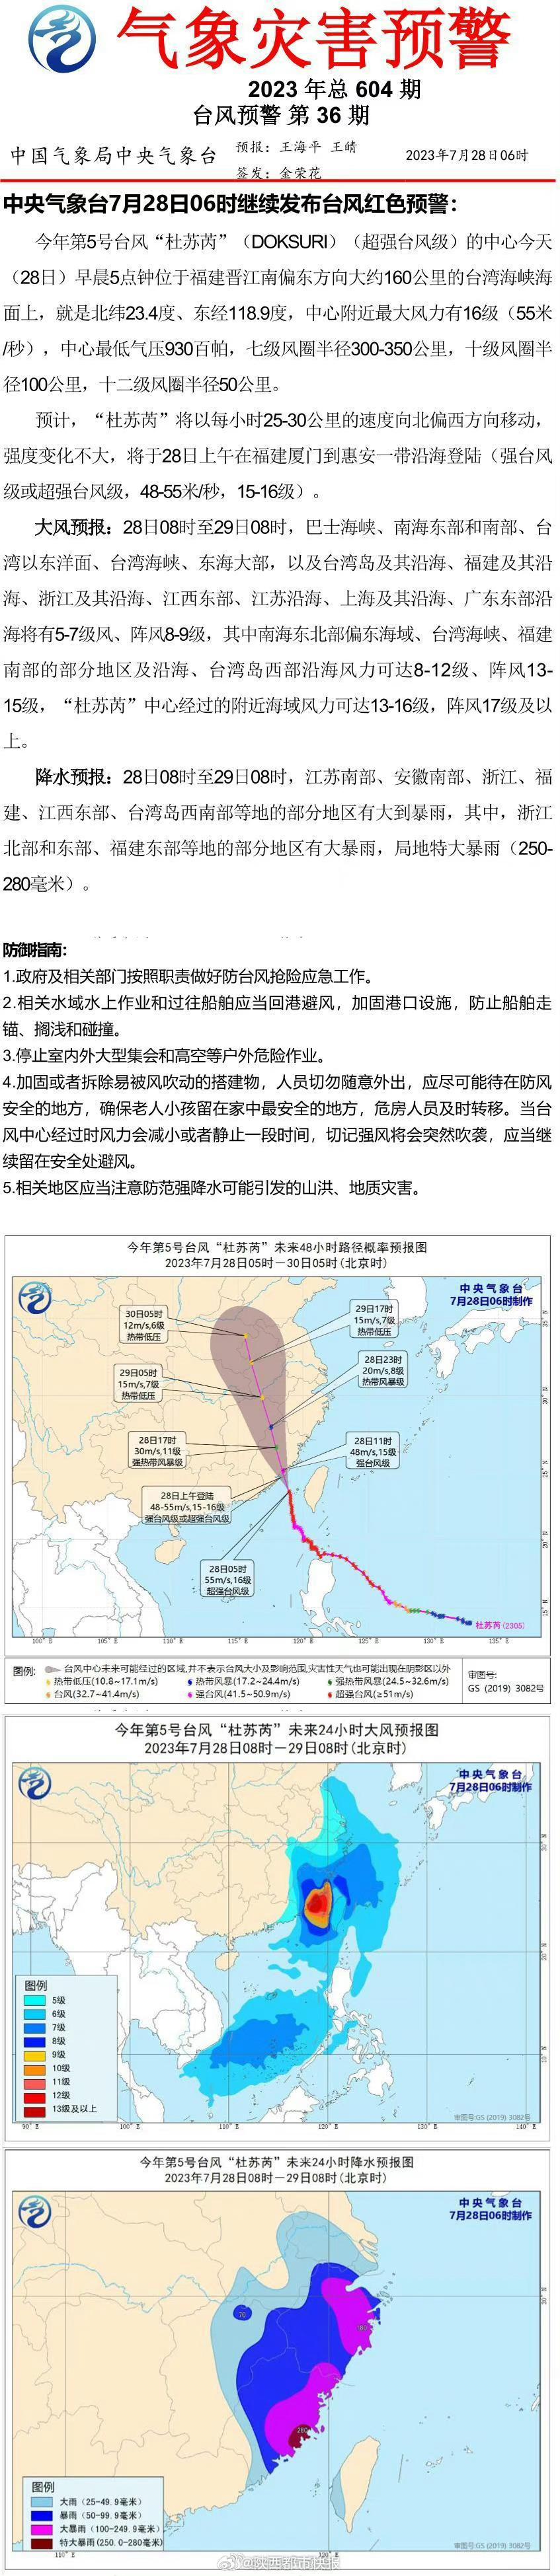 【台风杜苏芮今天上午即将登陆 陕西暴雨与台风有关】7月27日8时至20